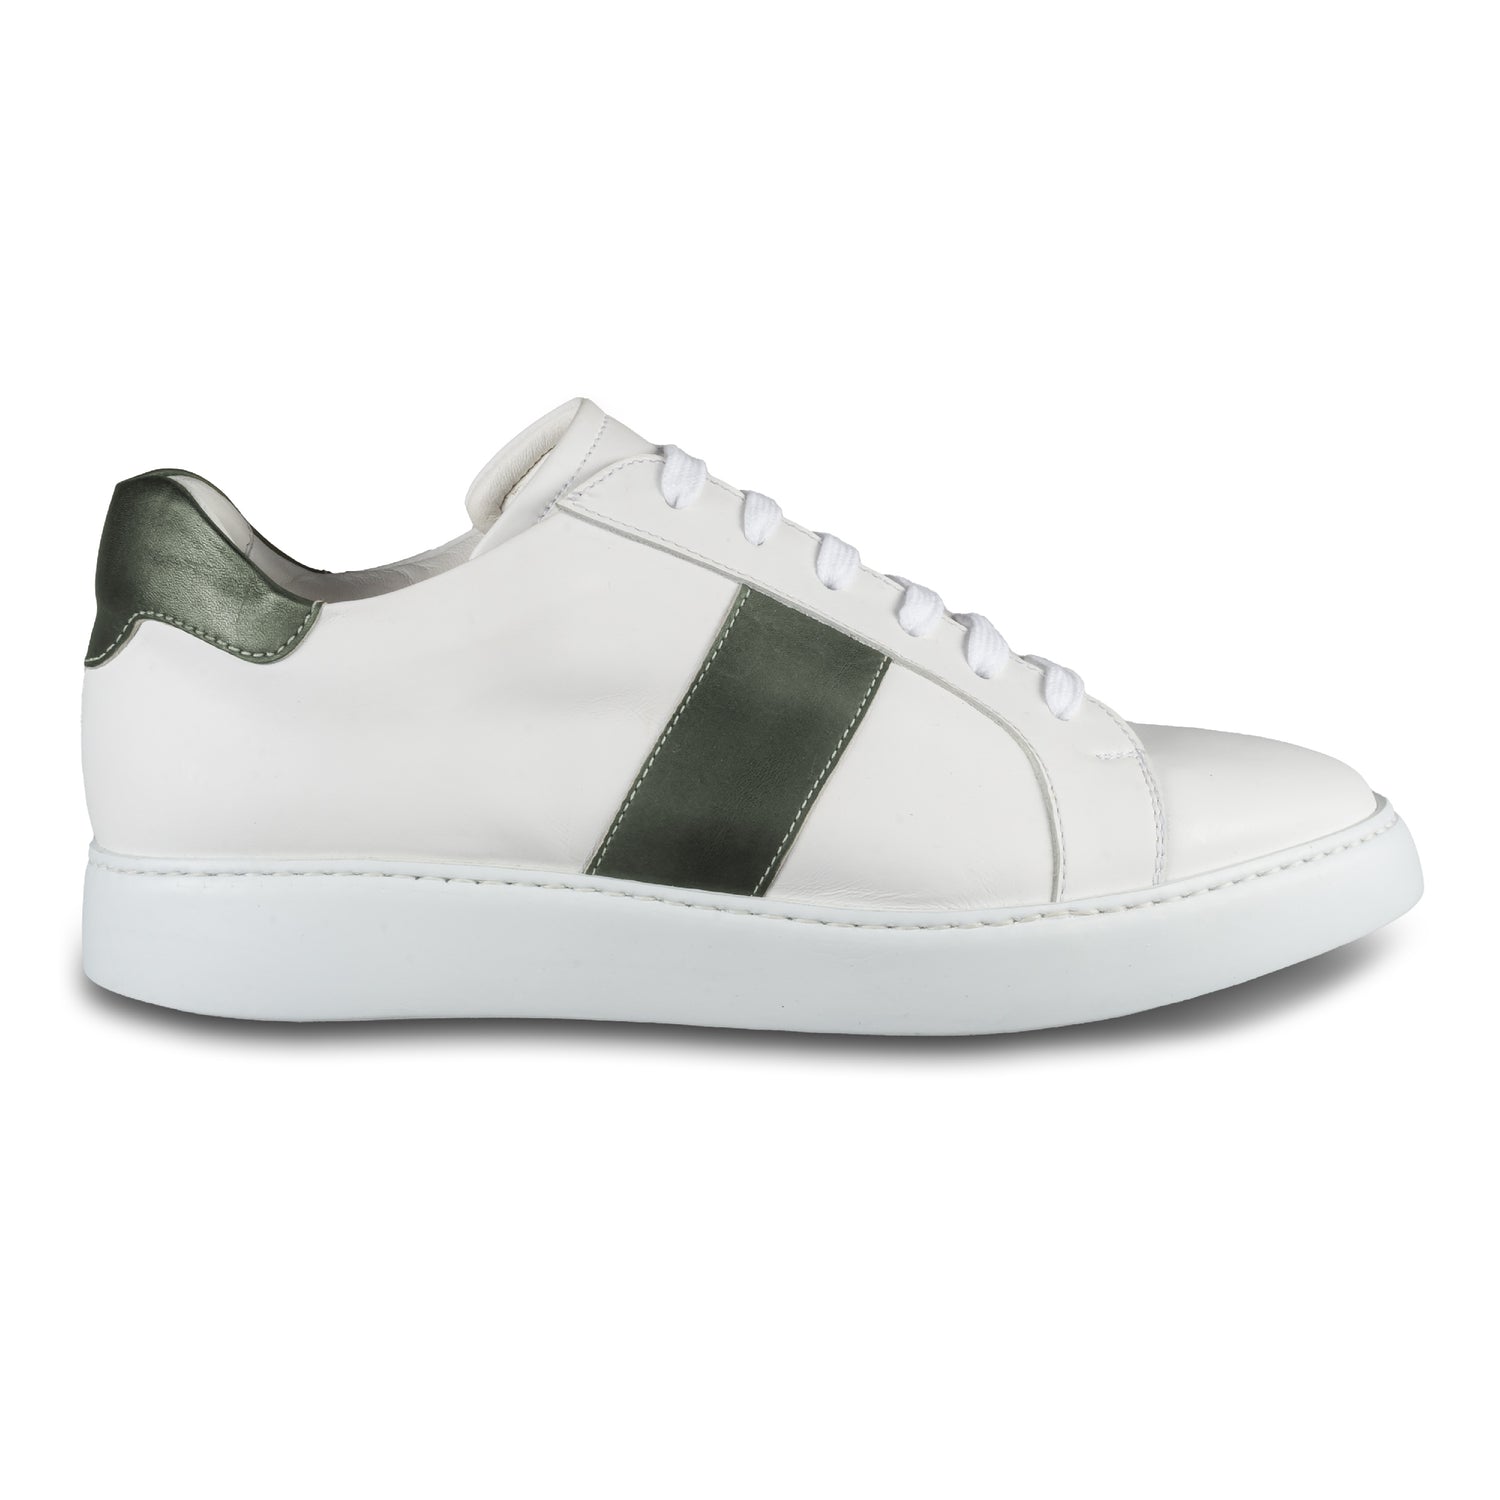 Brecos Herren Kalbsleder Sneaker in weiß mit grün. Leichte, weiße Gummisohle. Handgefertigt in Italien. Ansicht der Außenseite rechter Schuh. 